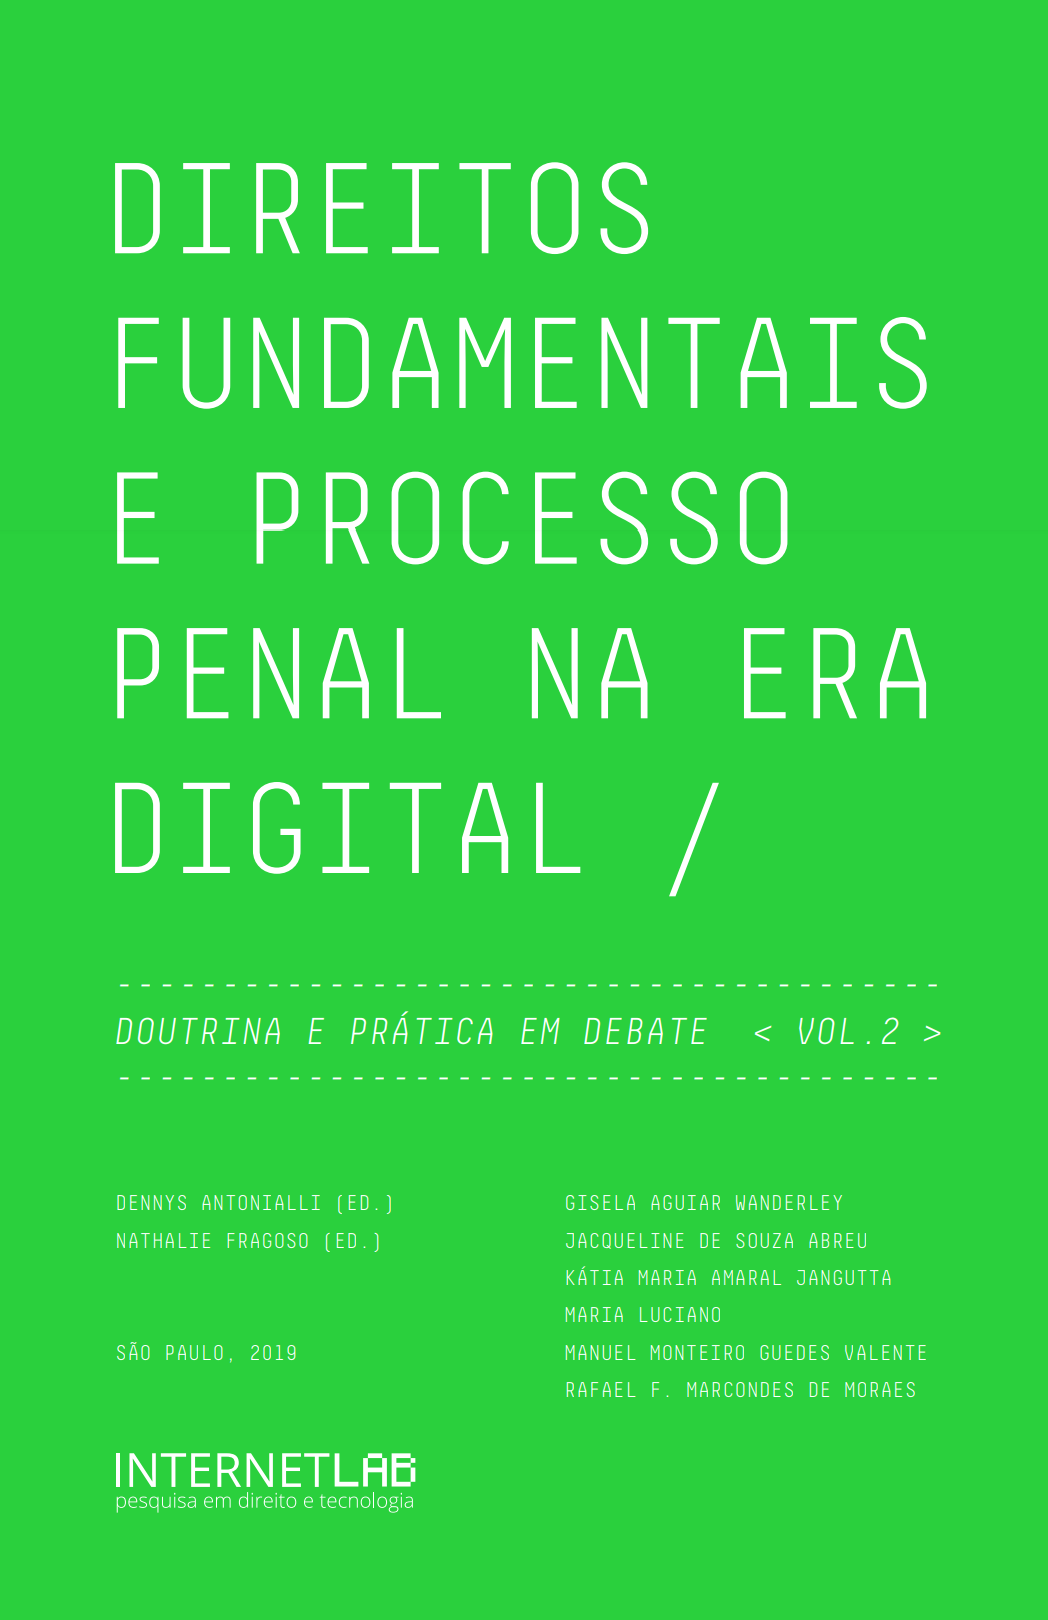 Cover of the book "Direitos fundamentais e processo penal na era digital"